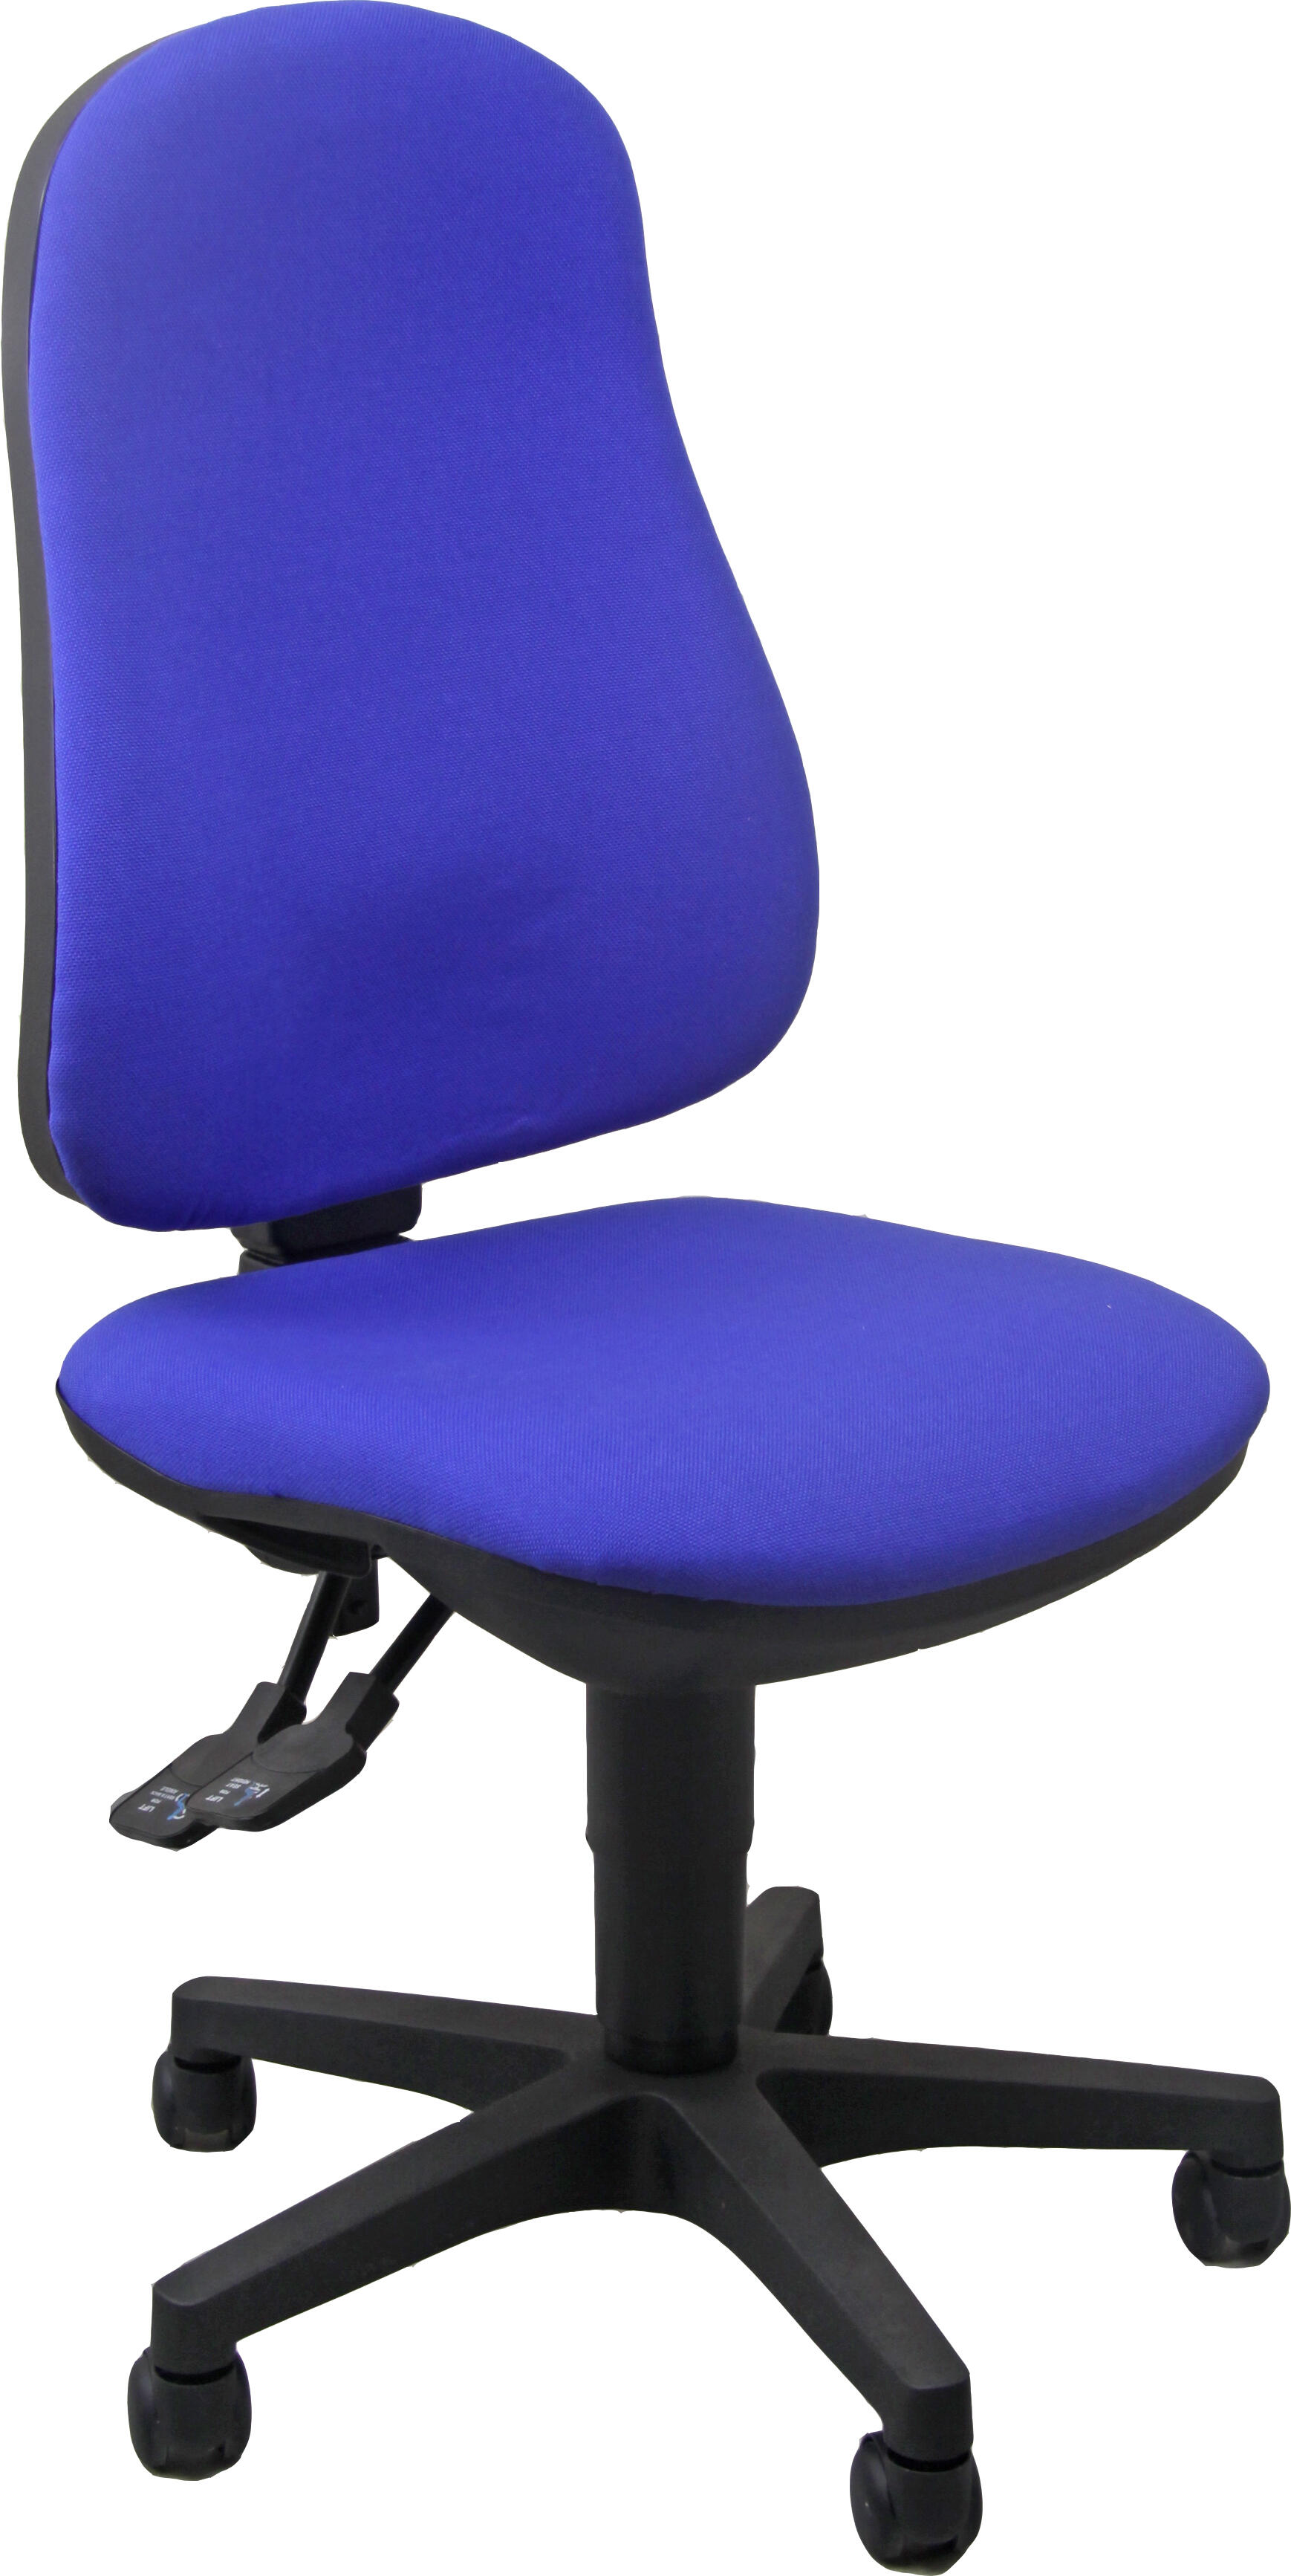 Silla de escritorio ariel aisy color azul